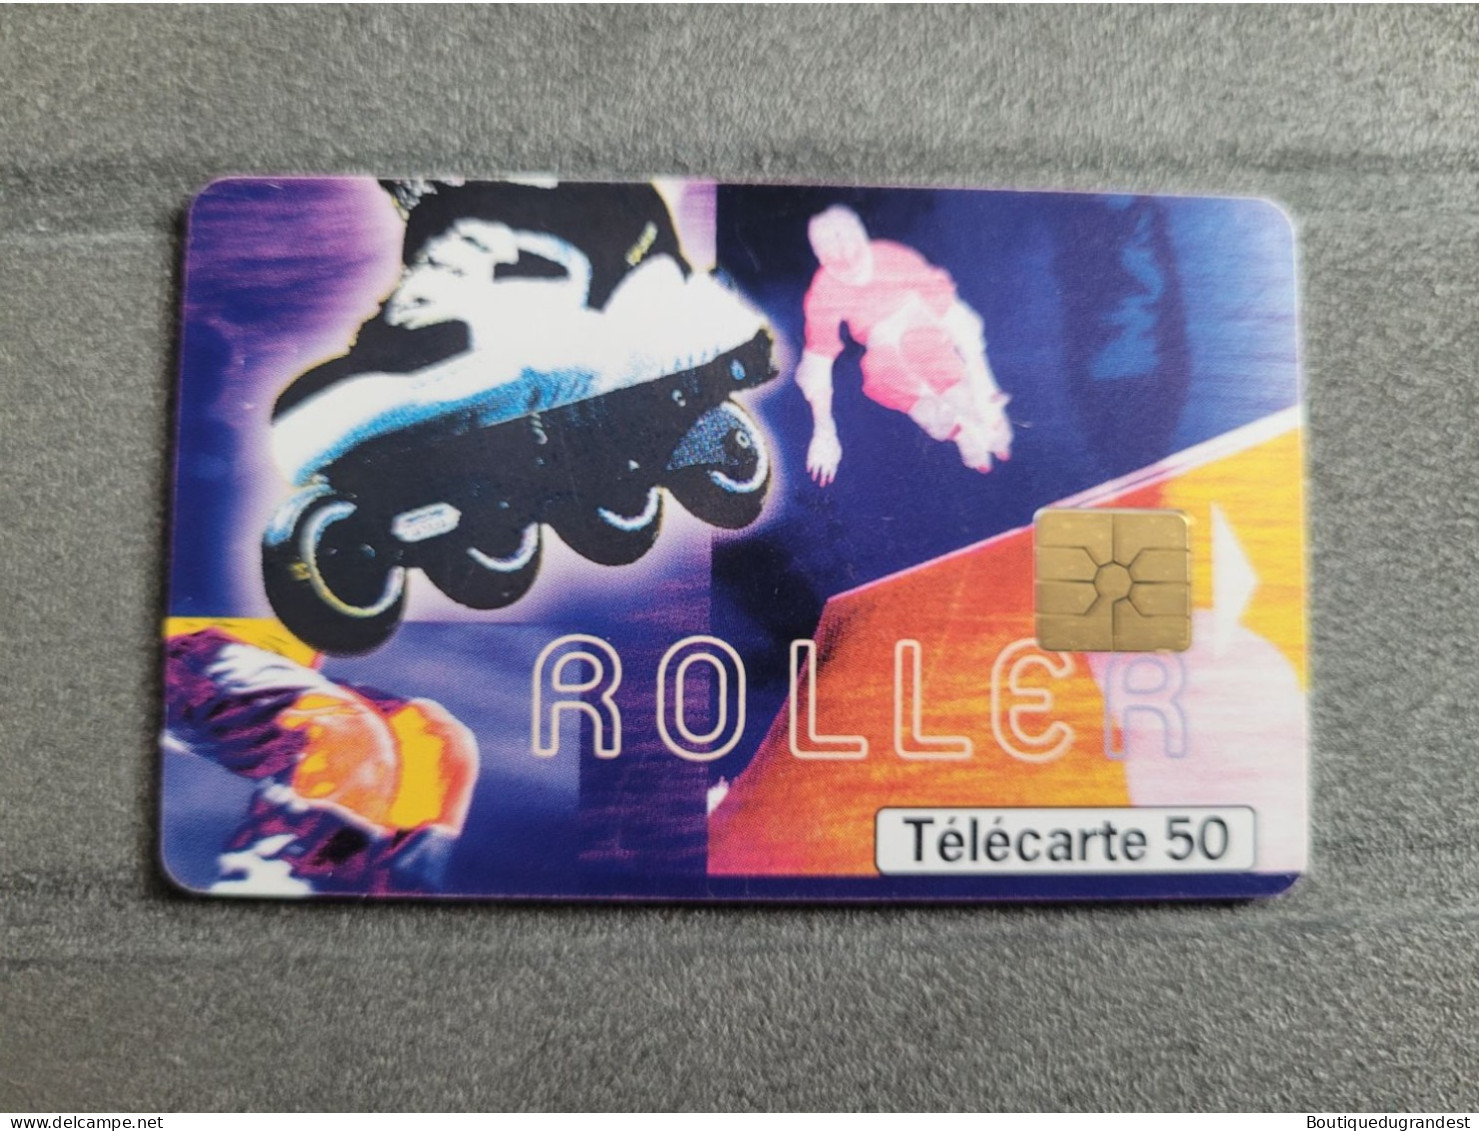 Télécarte 50 Unités Roller 12/99 - Deportes